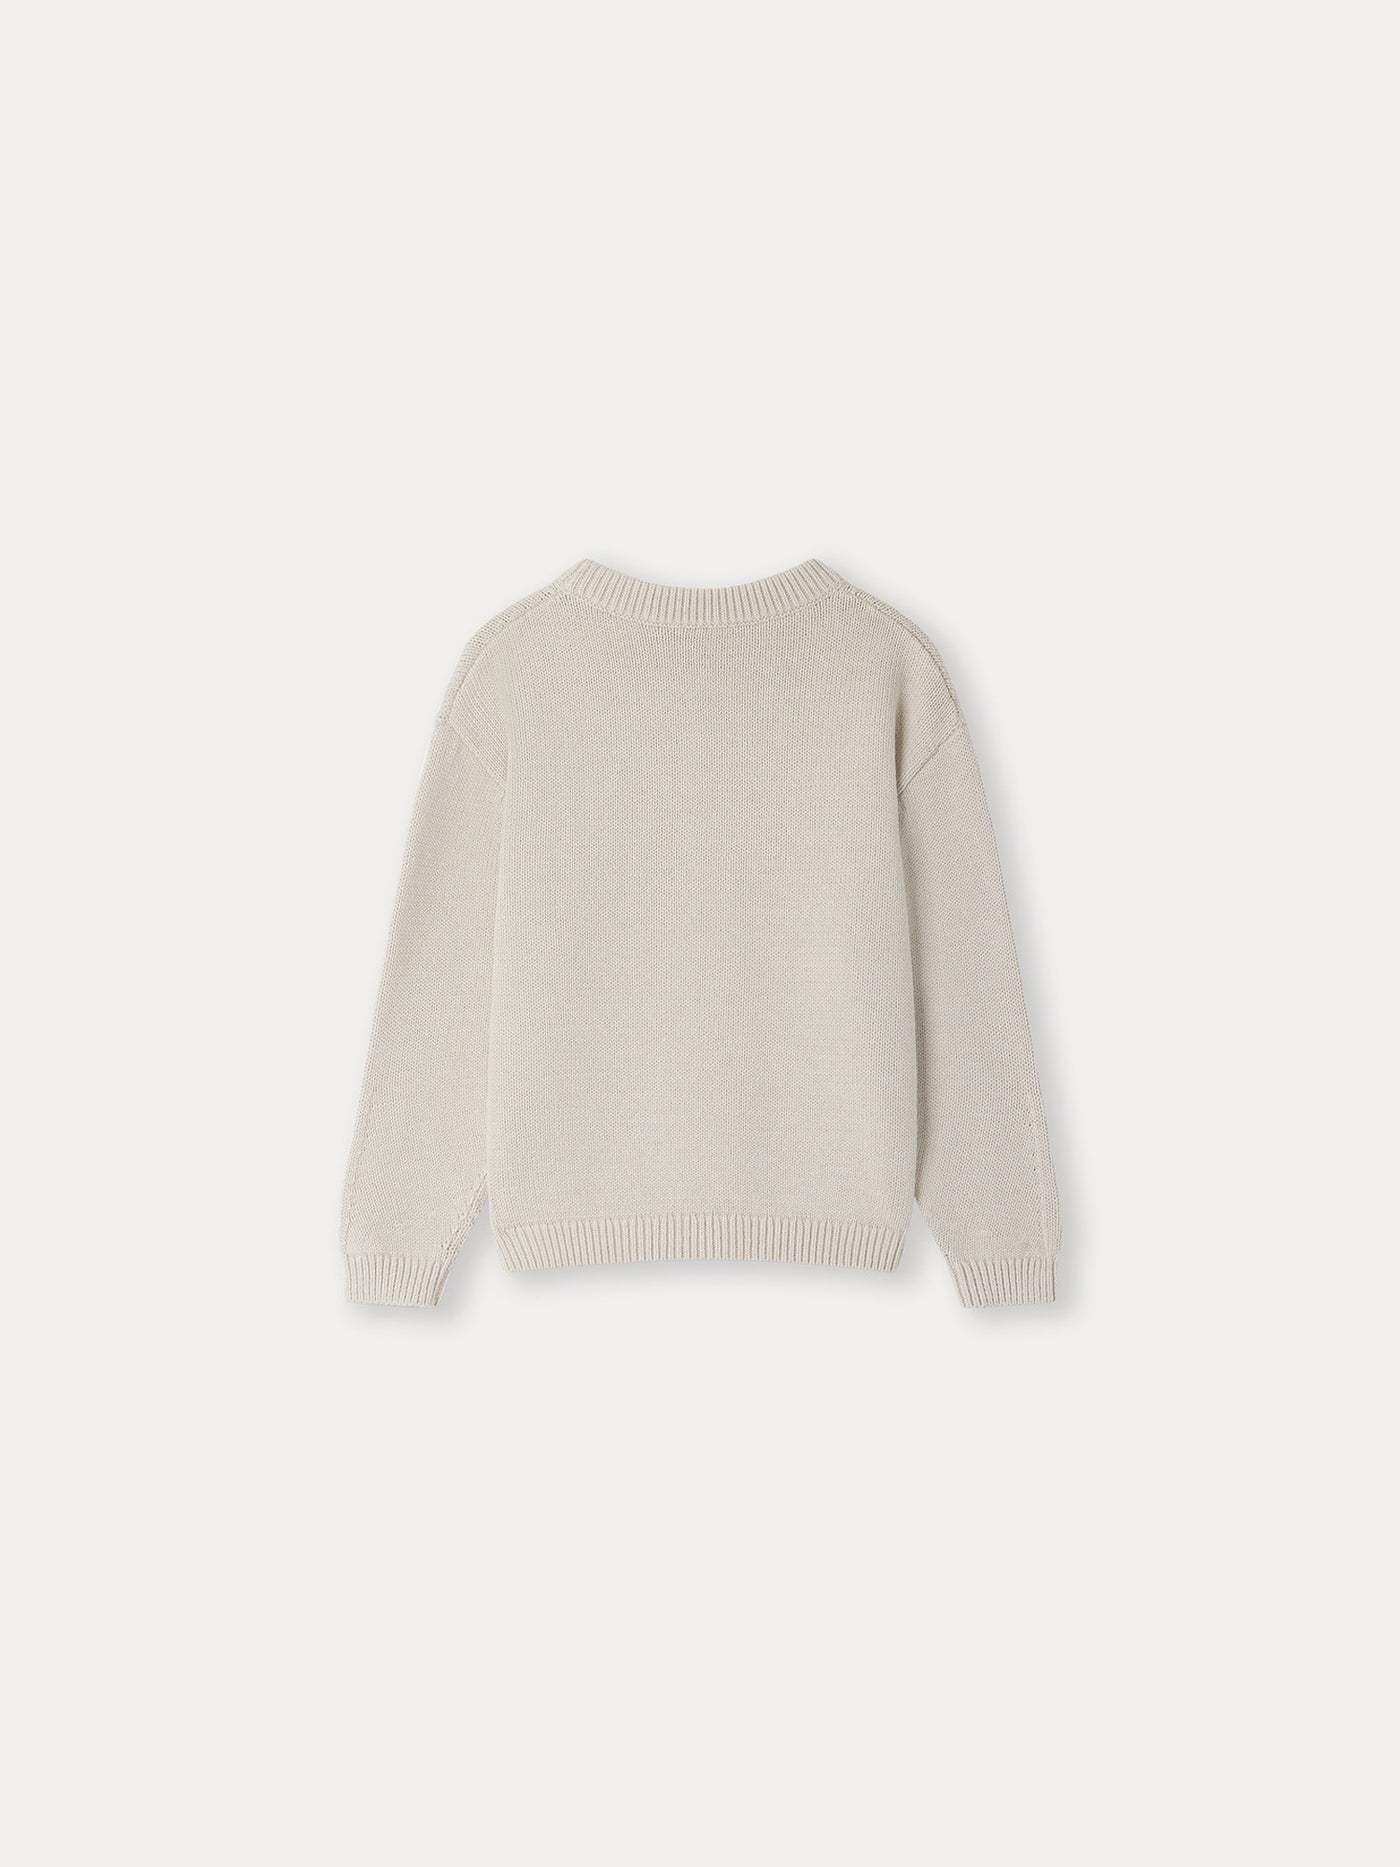 Florenz Sweater alabaster white